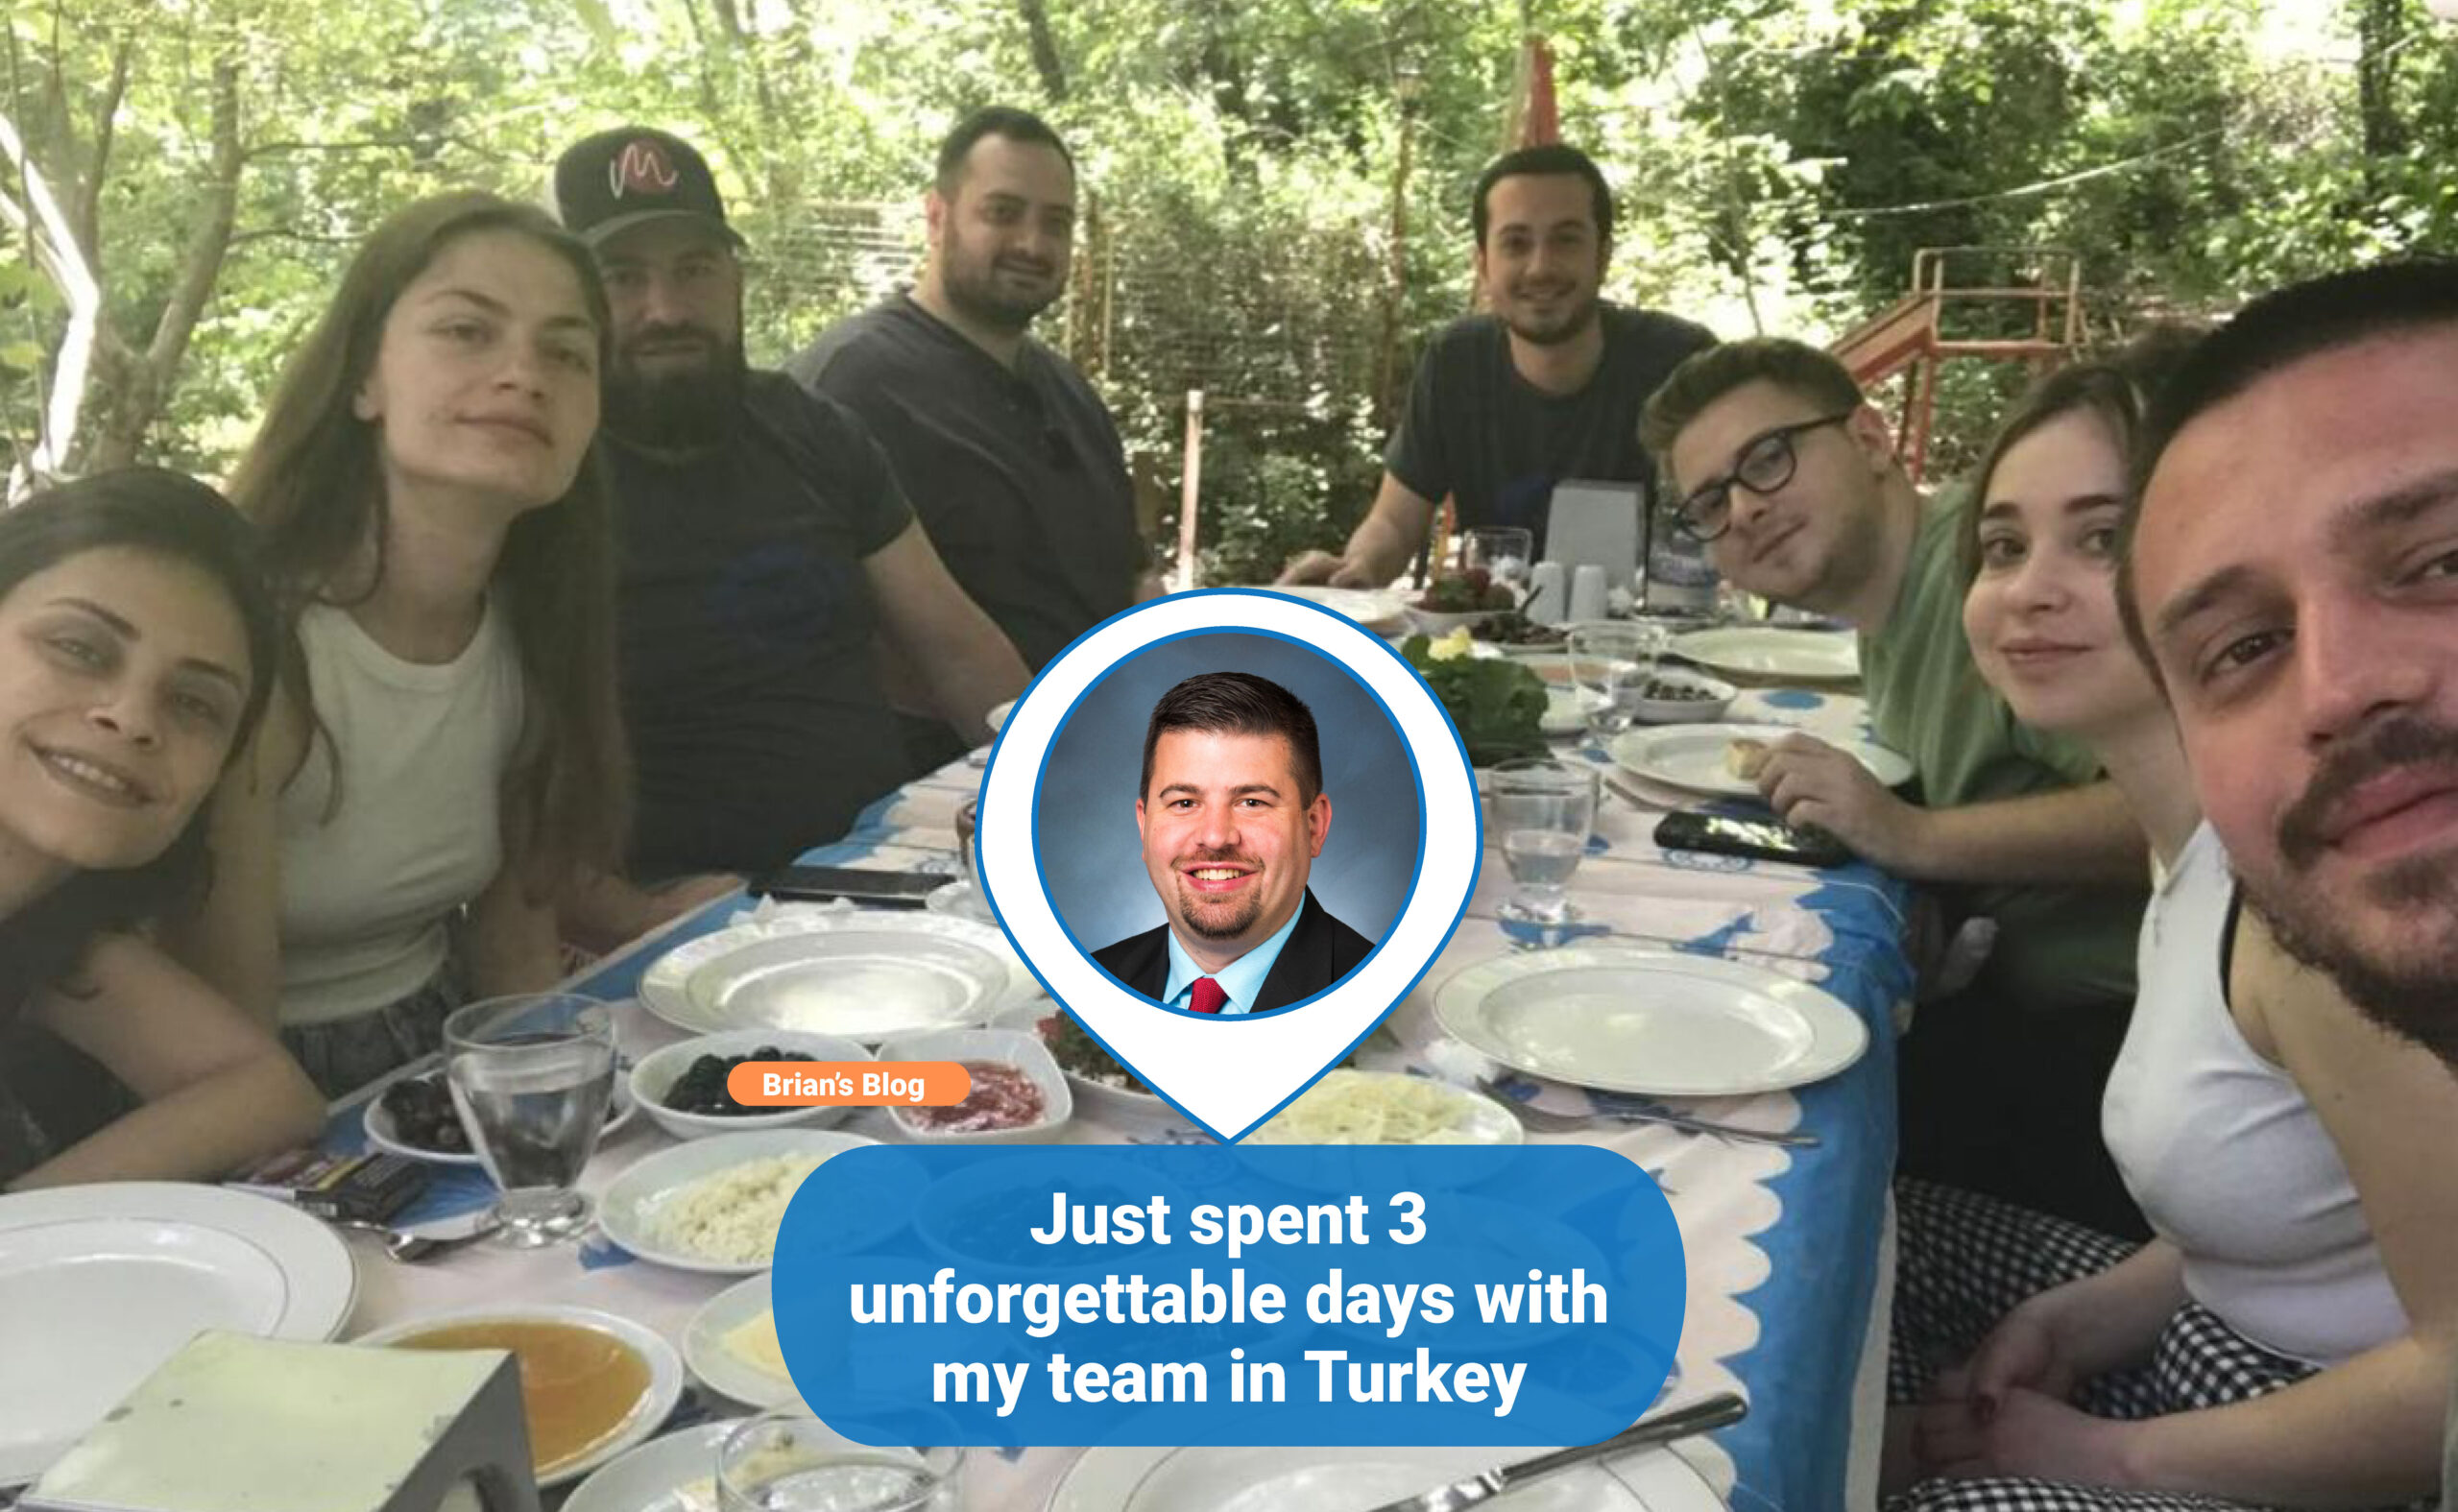 Just spent 3 unforgettable days with my team in Turkey 🇹🇷